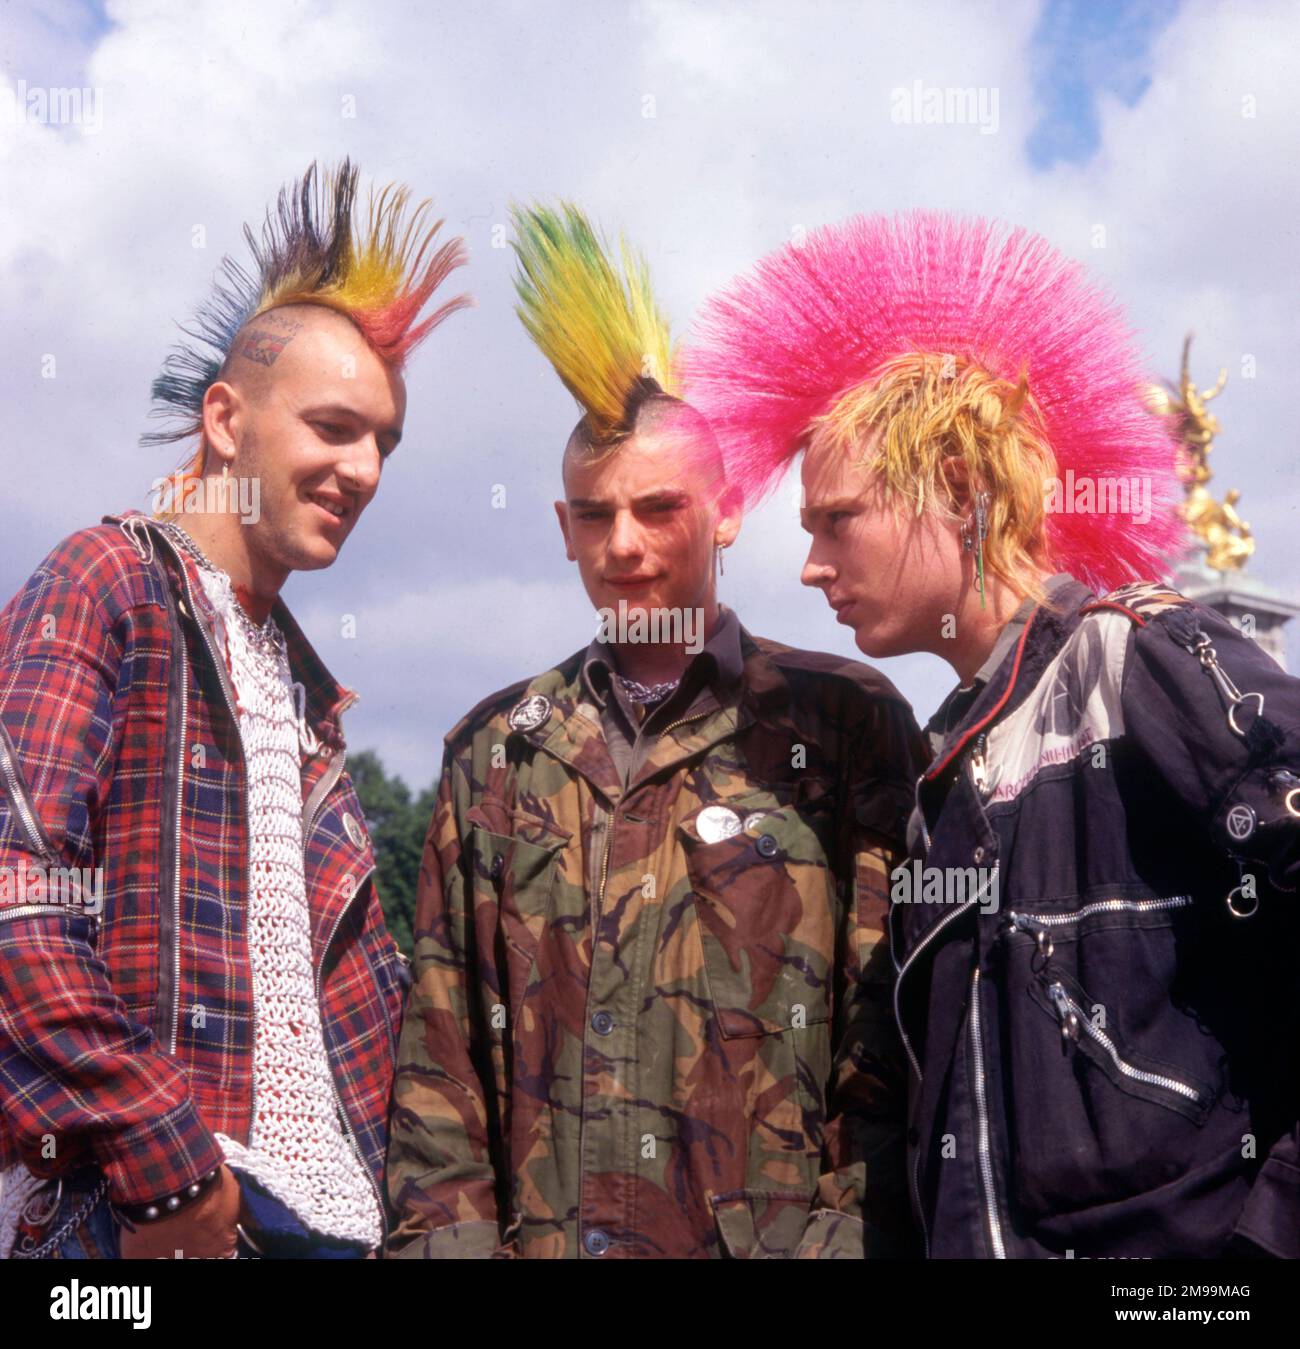 London - drei Punks mit gefärbten mohikanischen Haarschnitten. Stockfoto